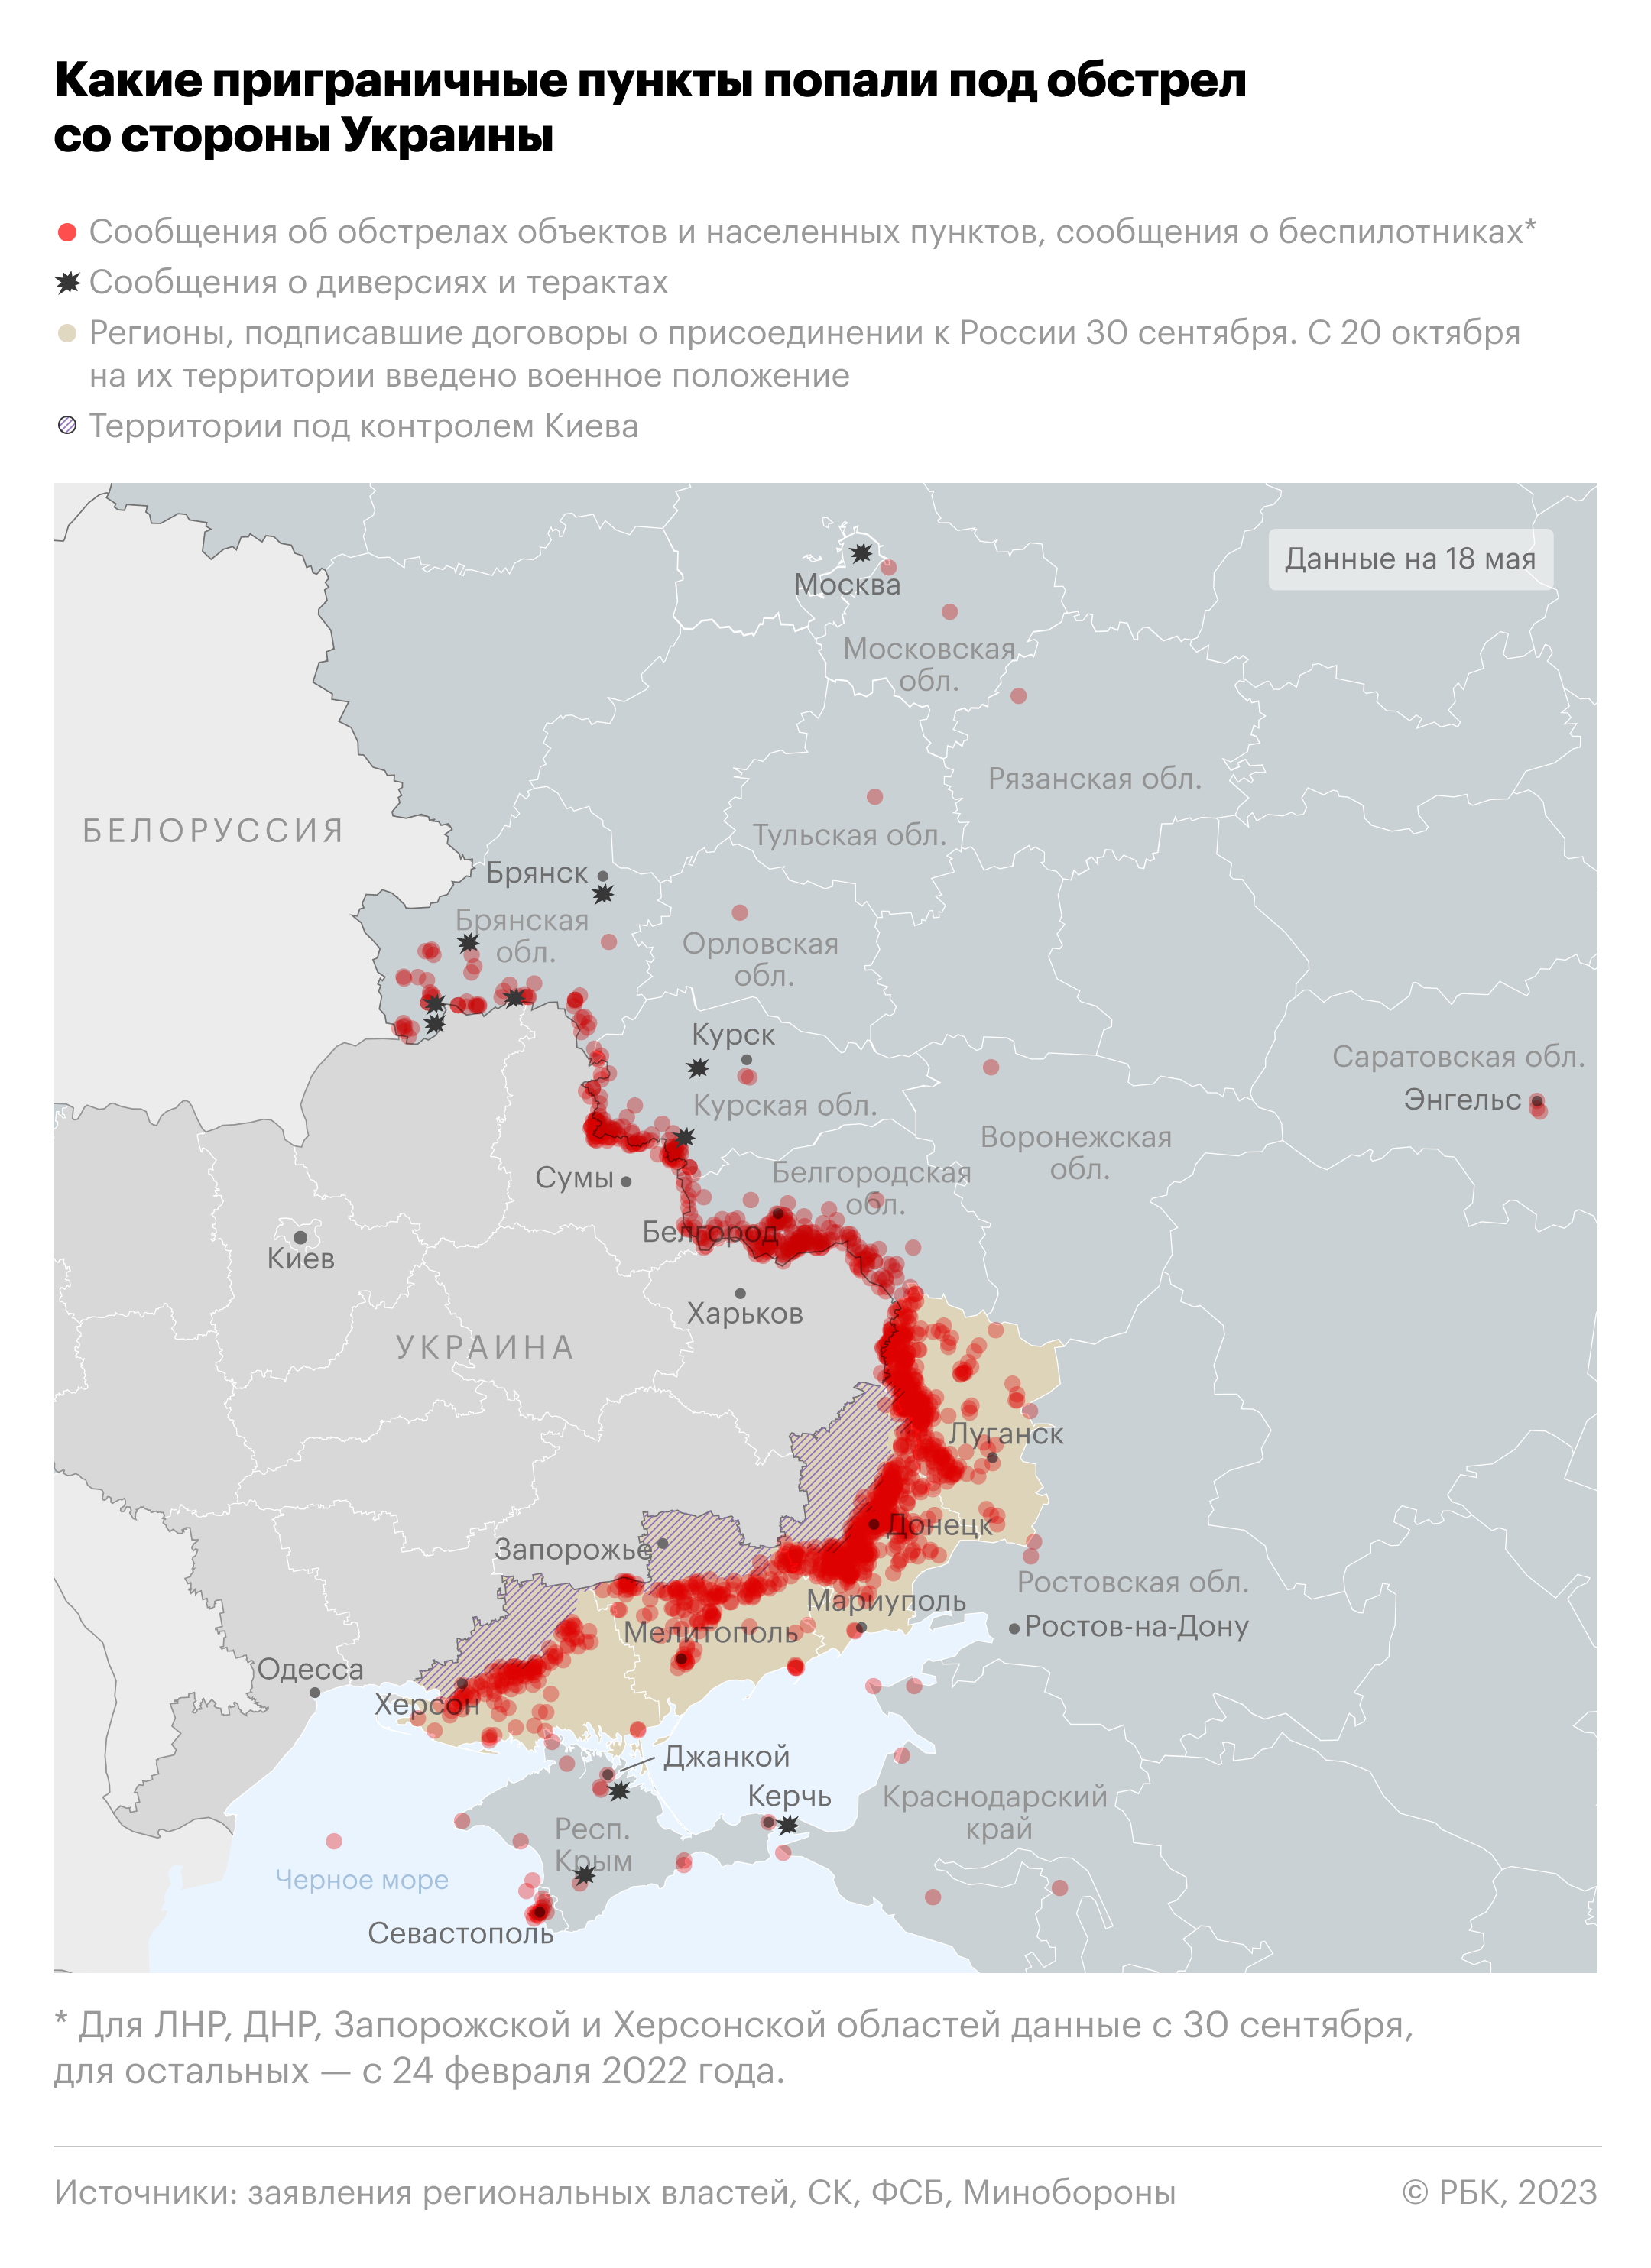 Атаки беспилотников и обстрелы территории России. Карта"/>













